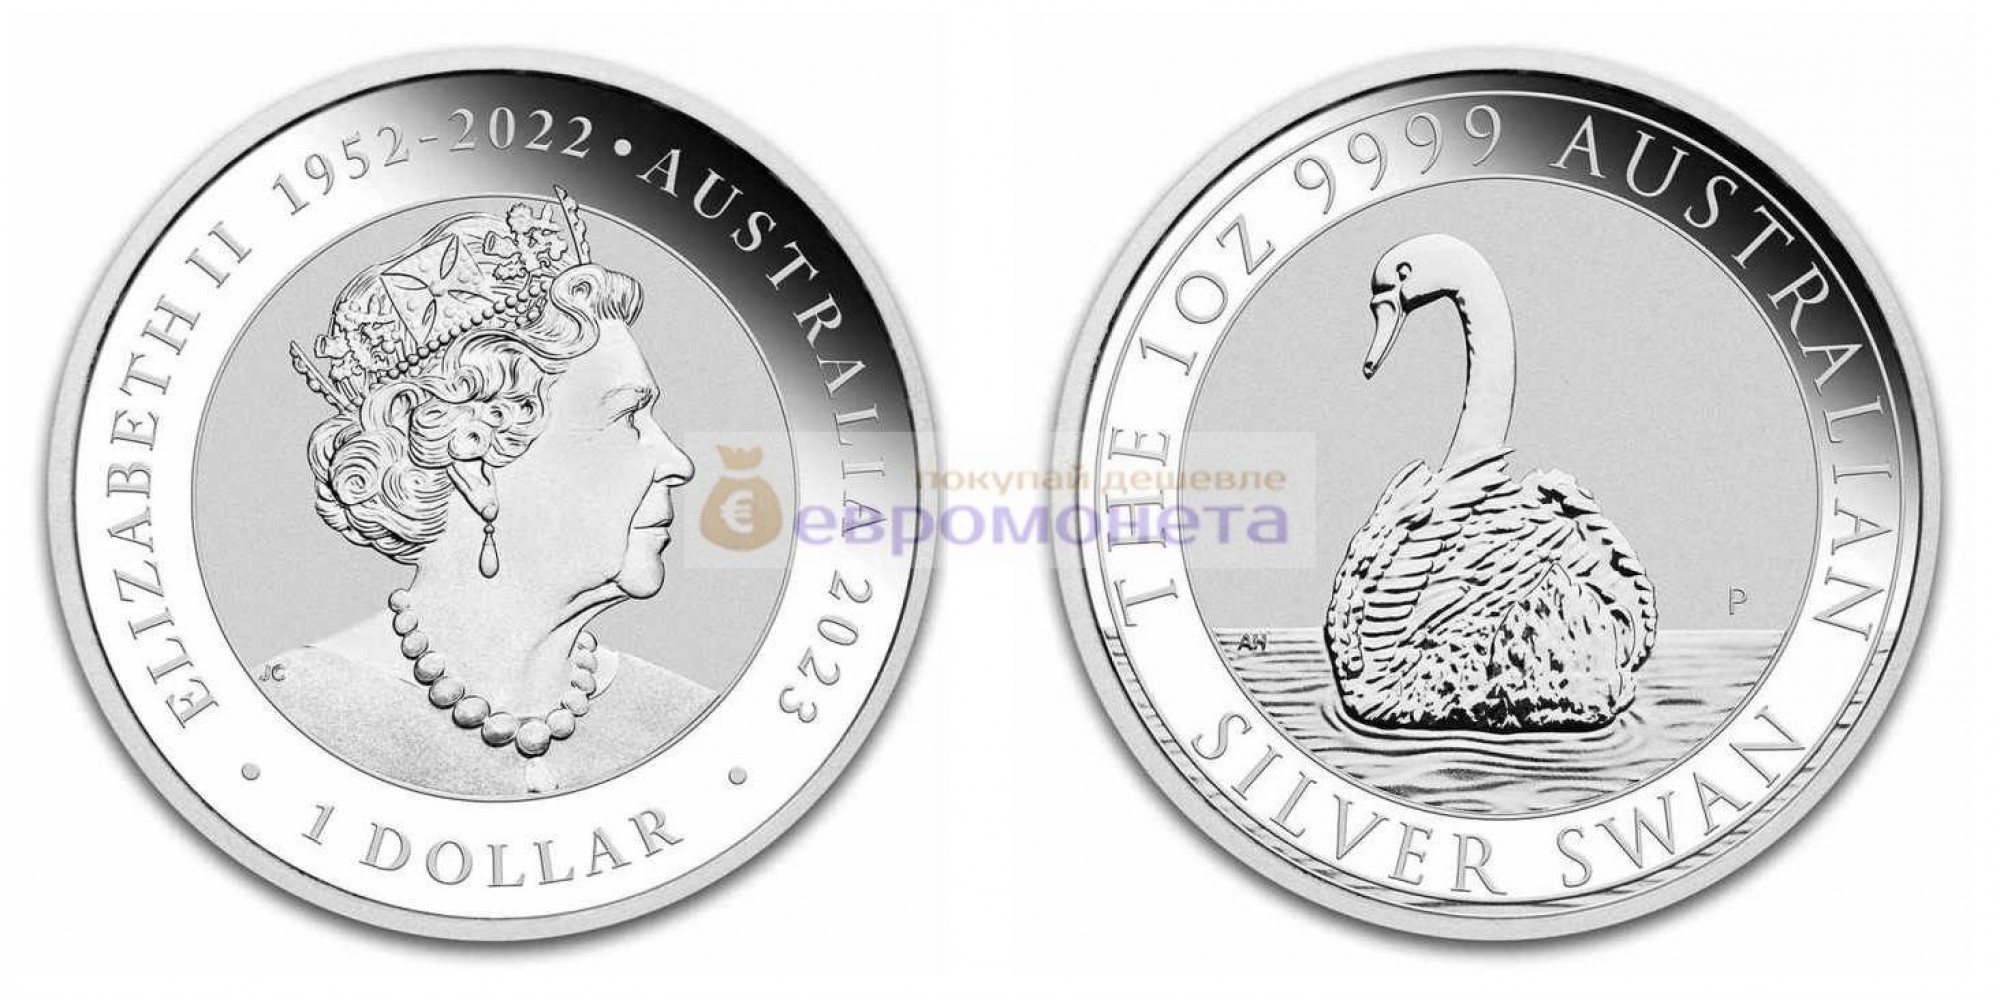 Австралия 1 доллар 2023 год Австралийский лебедь. Серебро унция 9999 пробы. Тираж 25 000 шт.